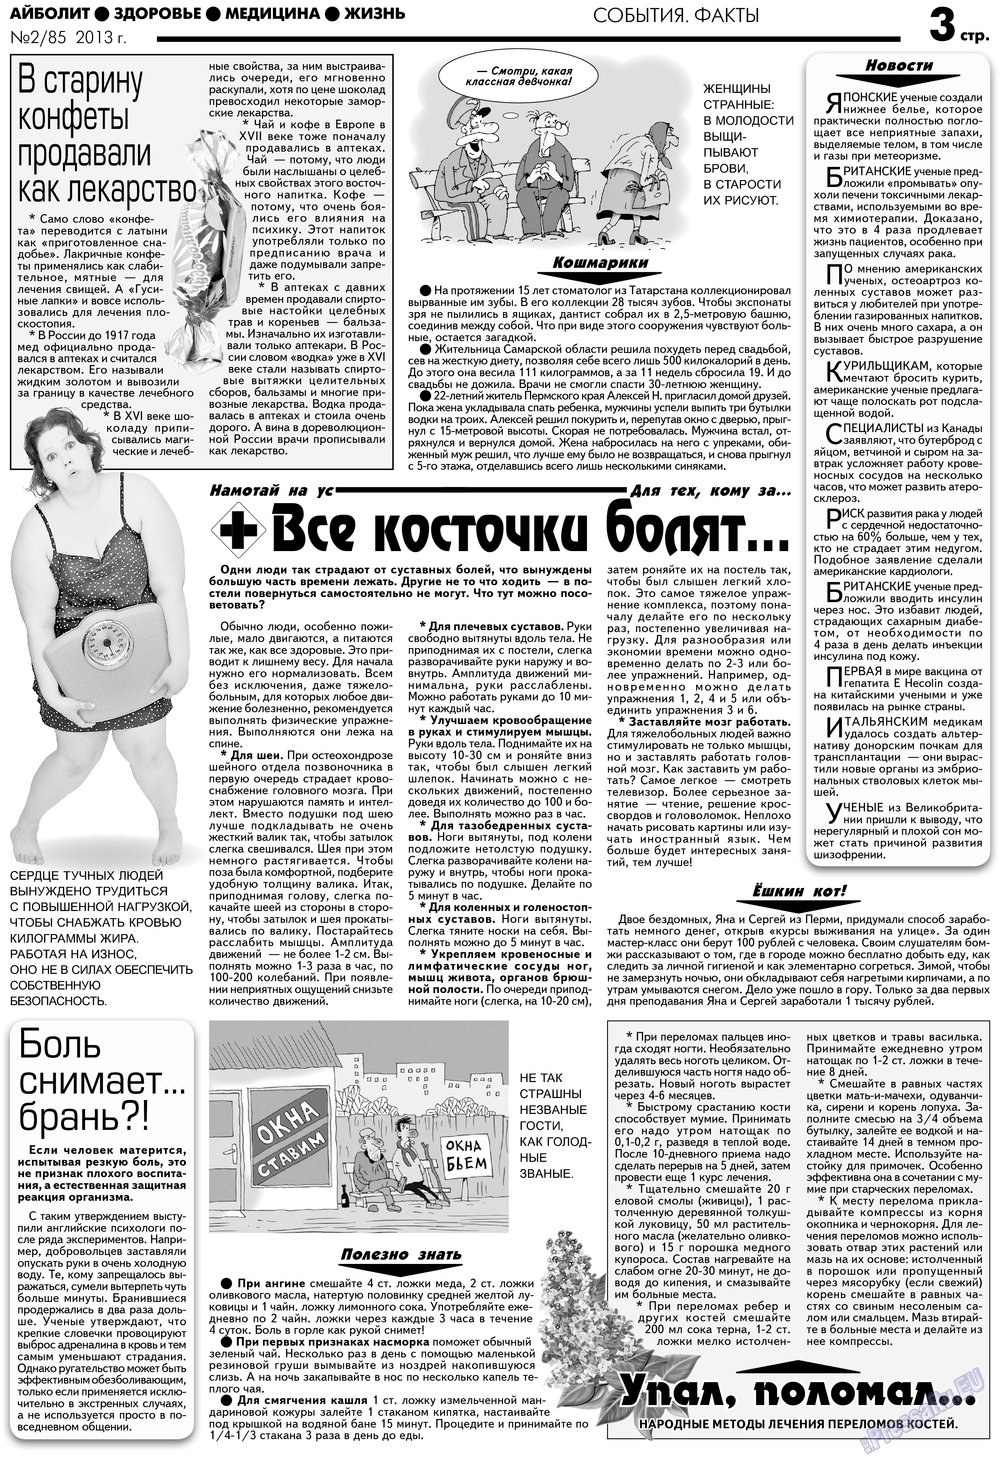 АйБолит, газета. 2013 №2 стр.3